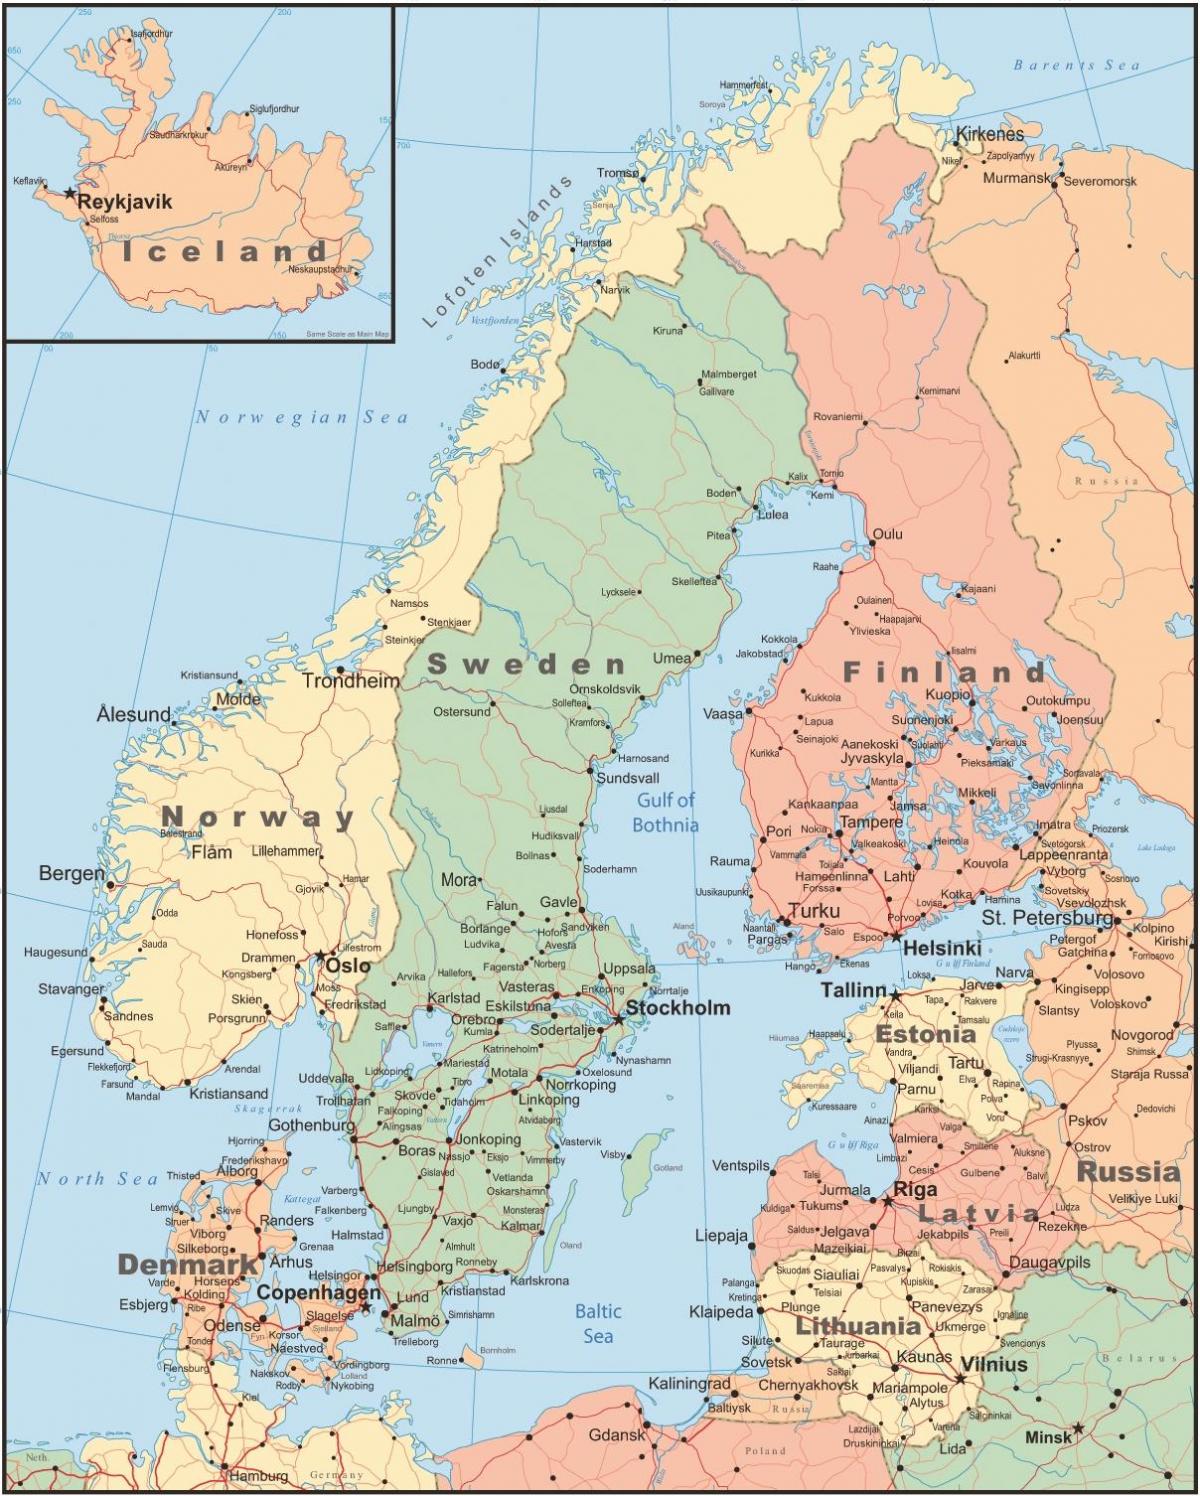 के नक्शे और आसपास के देशों फिनलैंड